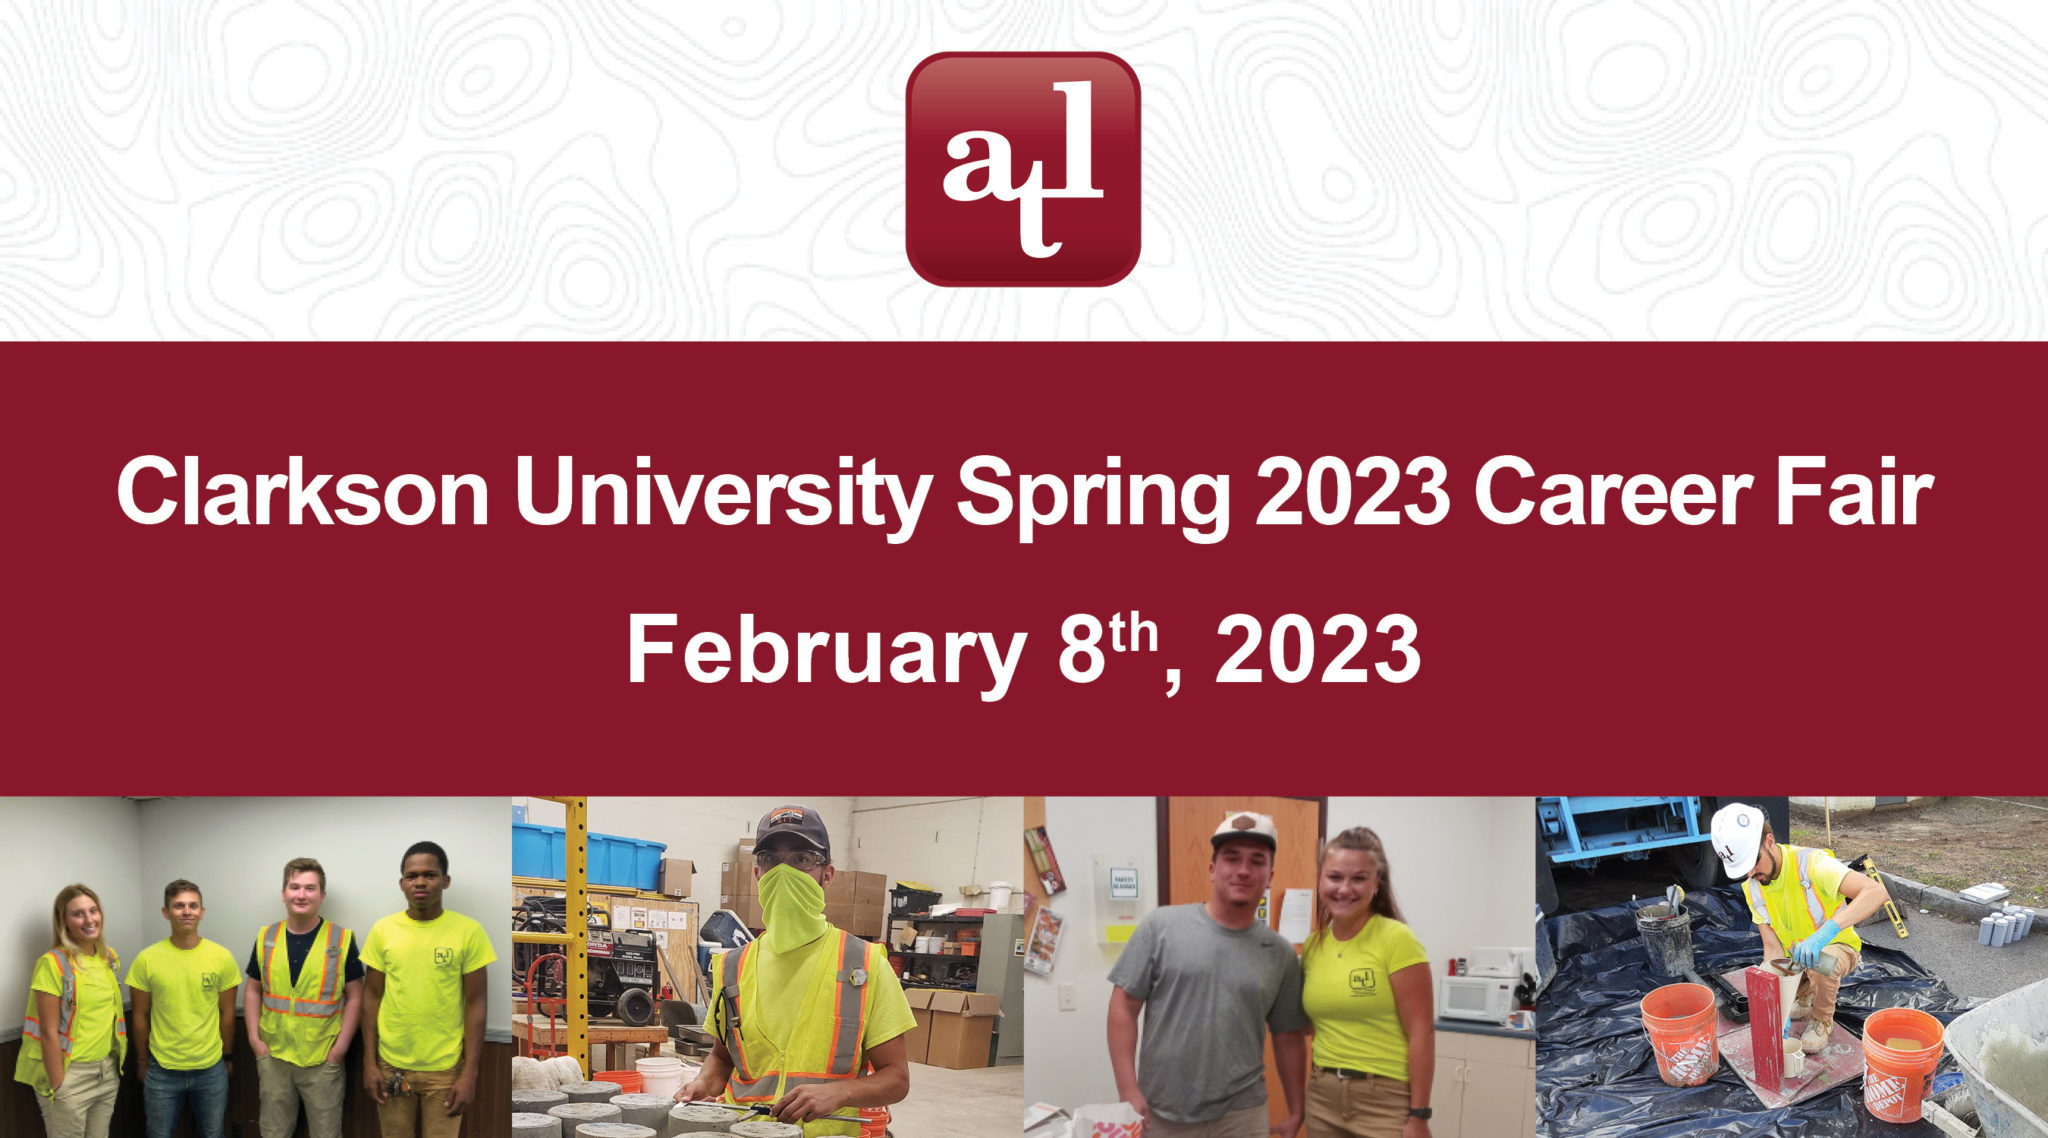 atl-is-attending-the-clarkson-university-spring-2023-career-fair